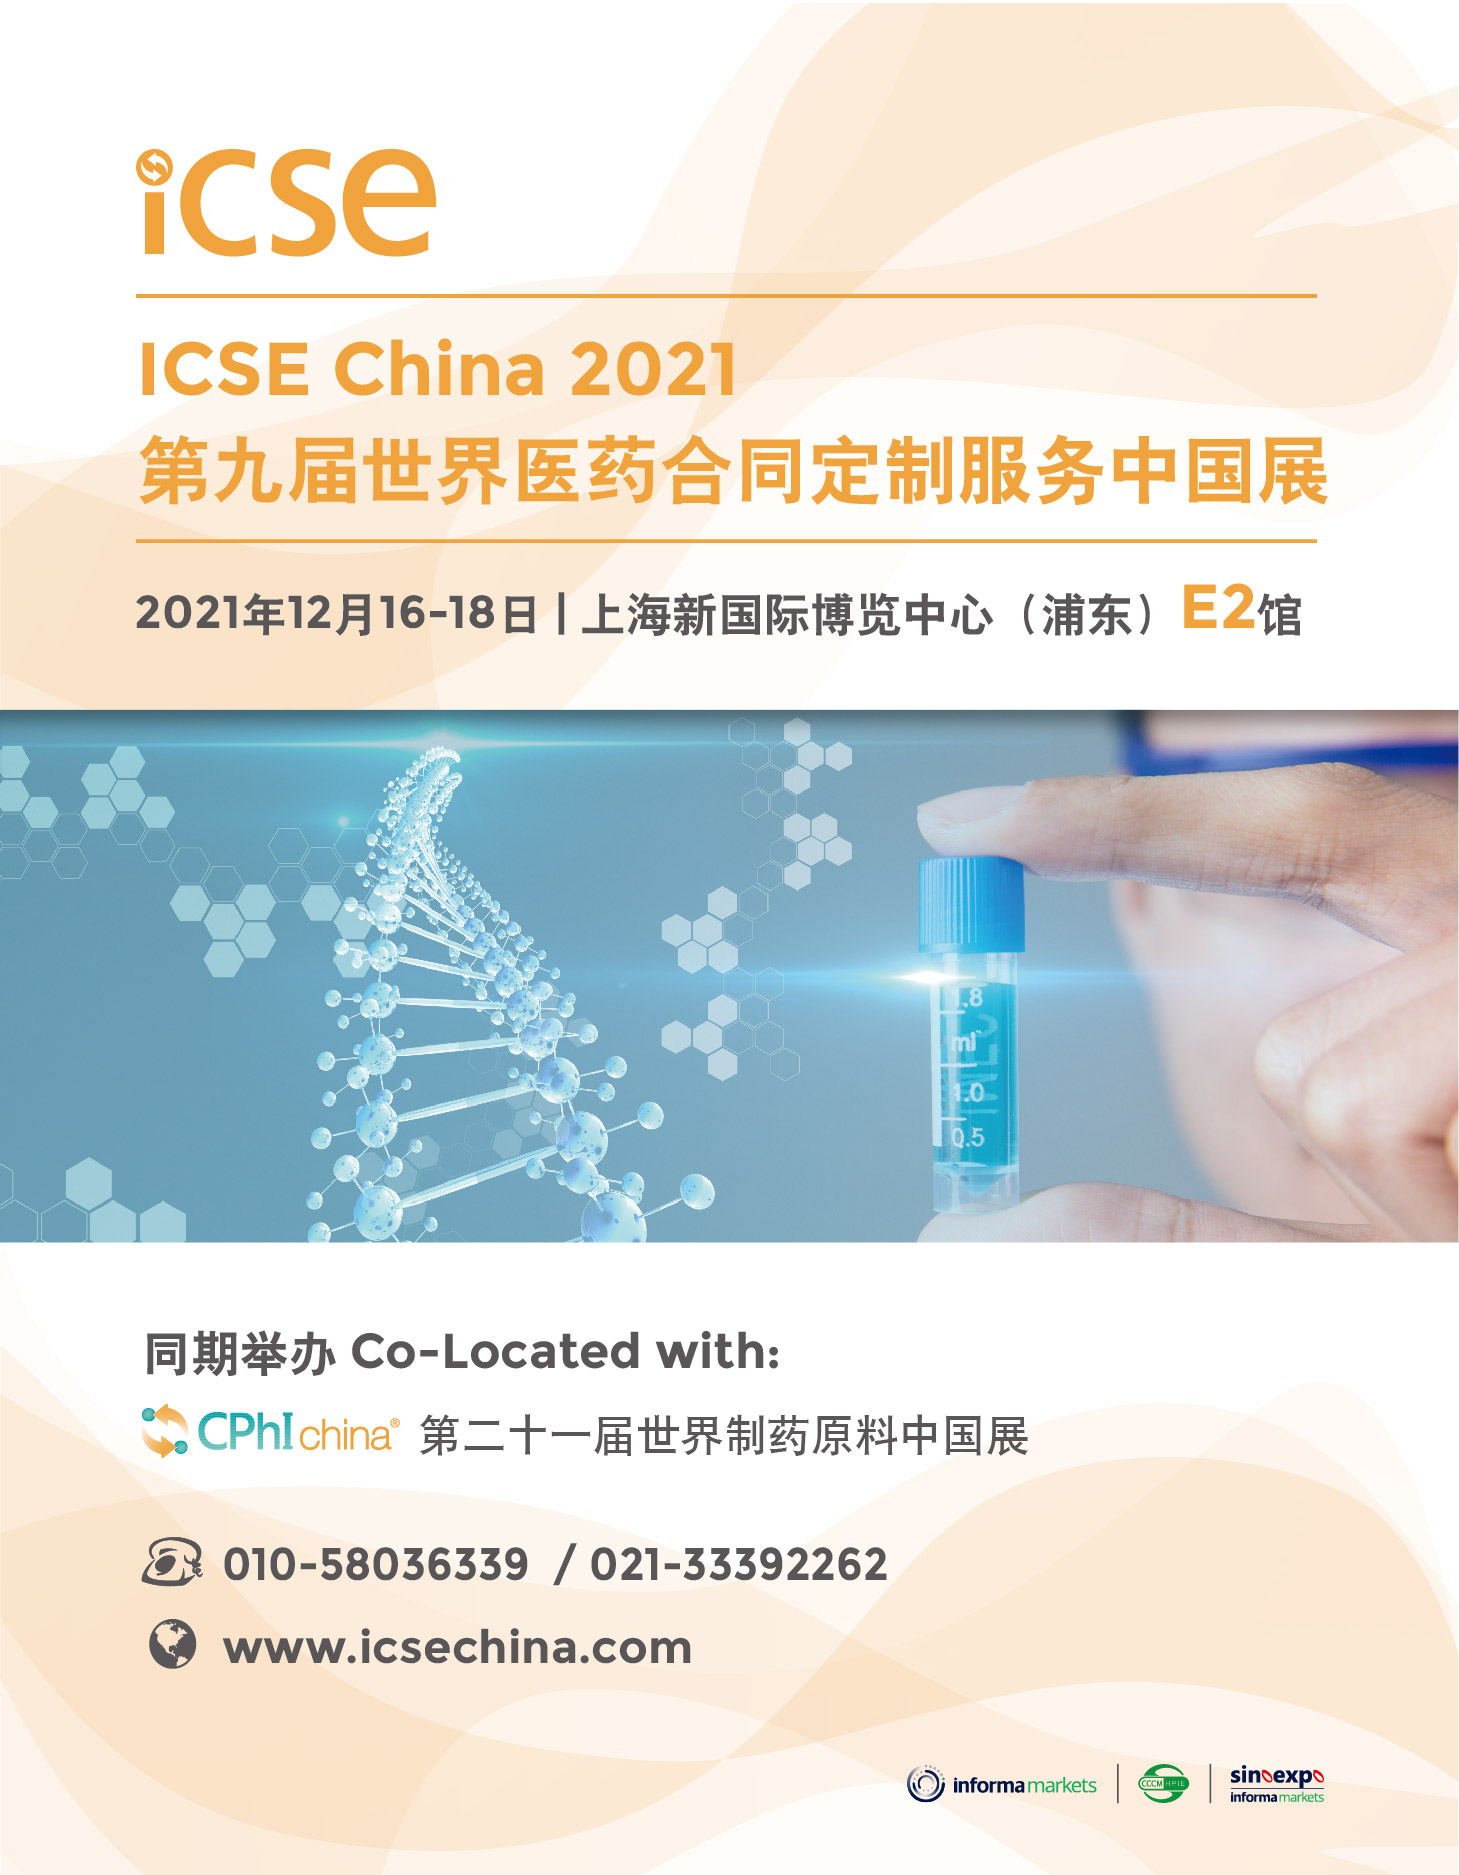 ICSE China 2020